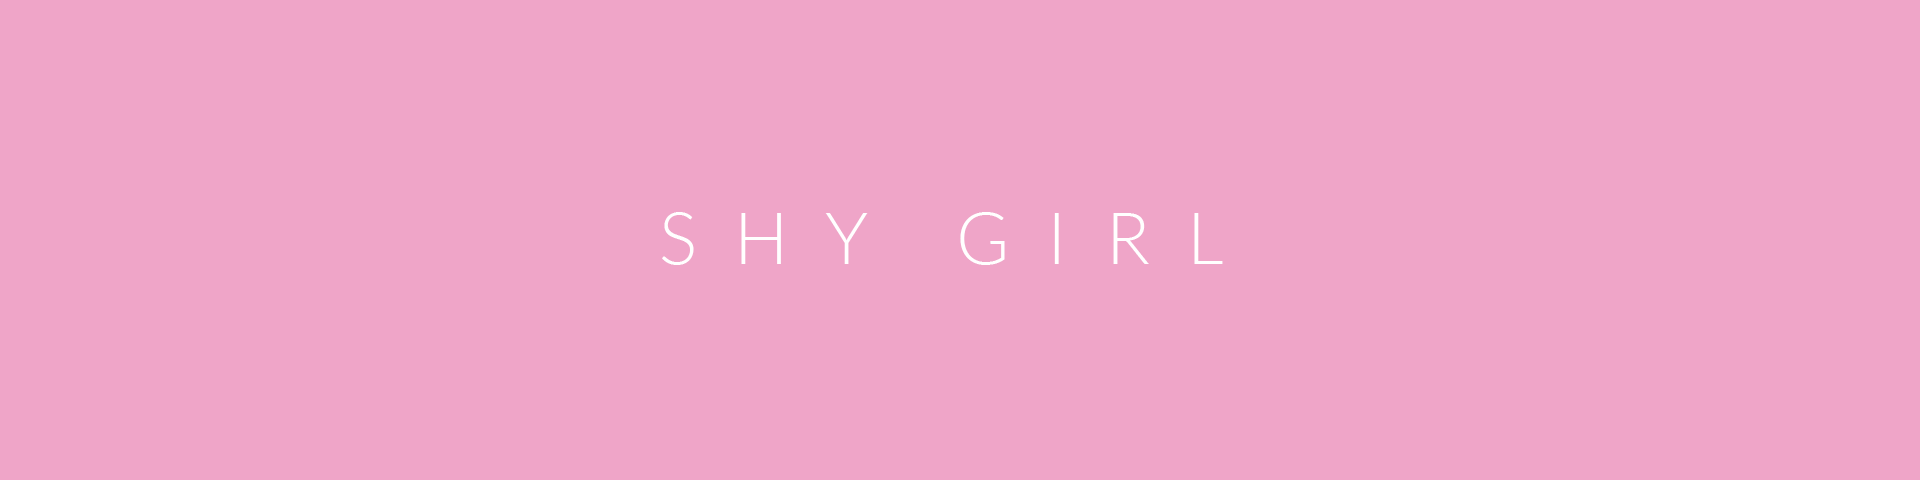 Shy Girl [v 0.86]